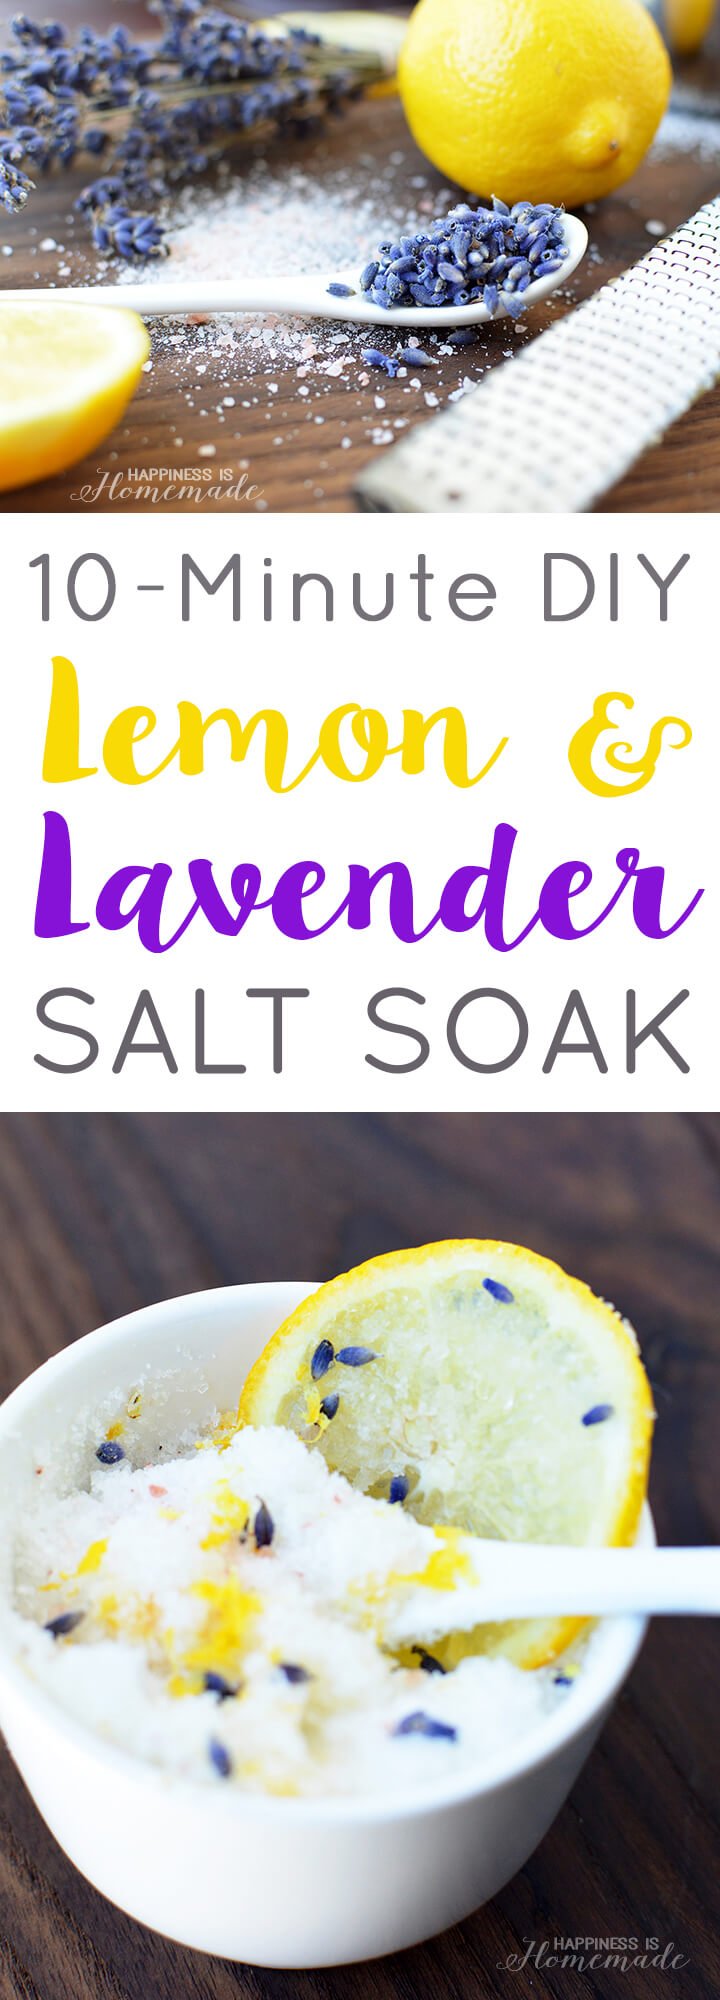 10-Minute DIY Lemon and Lavender Salt Soak